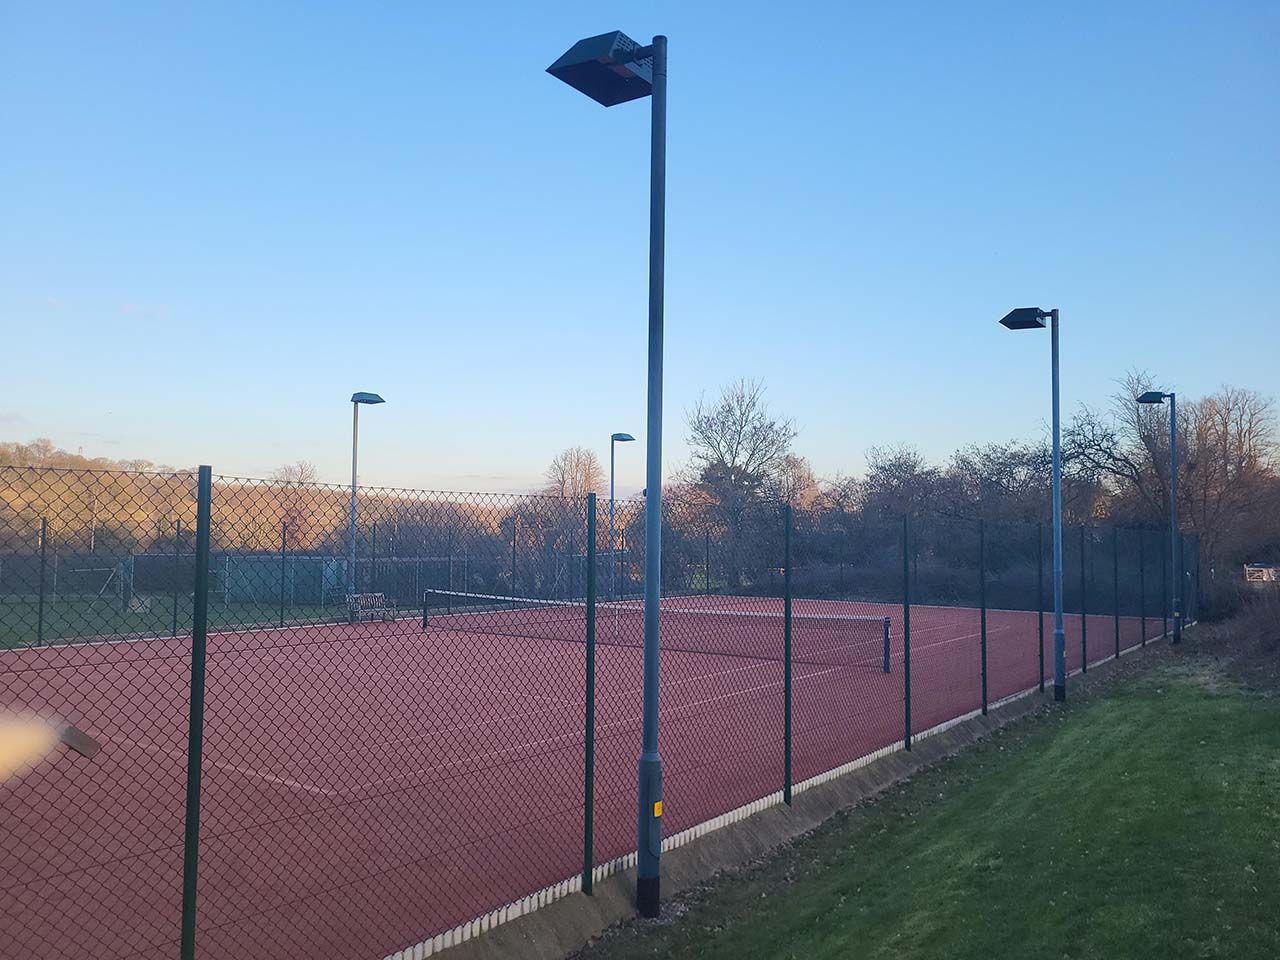 Great Missenden Lawn Tennis Club Phase 2